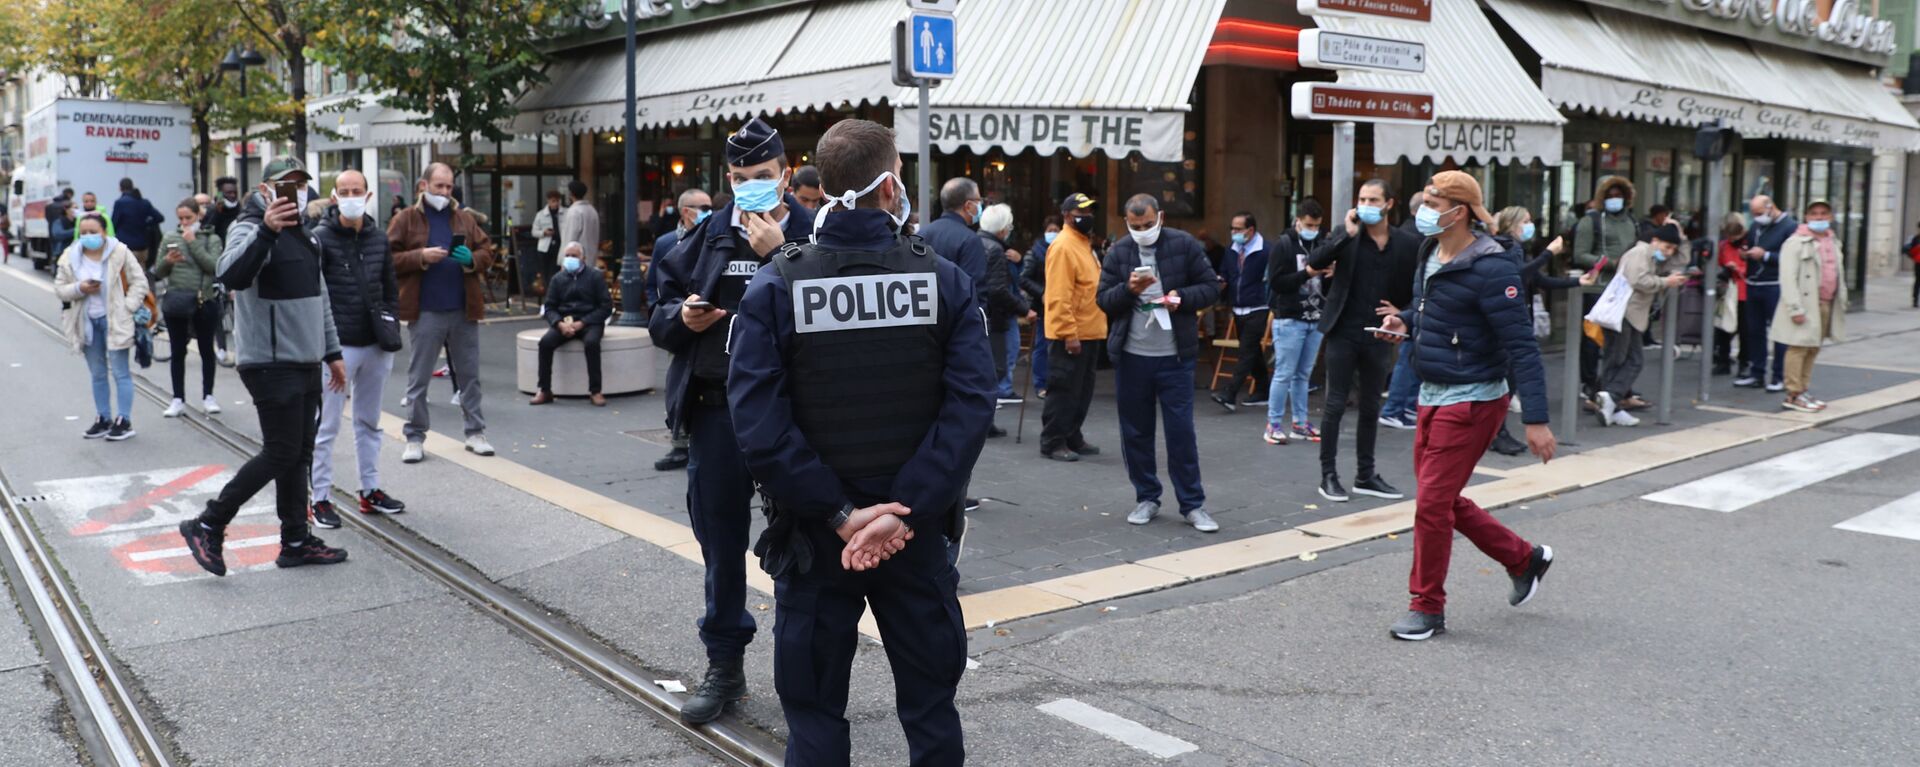  الشرطة الفرنسية في موقع هجوم طعن بالسكين أمام كاتدرائية نوتردام في مدينة نيس، فرنسا 29 أكتوبر 2020 - سبوتنيك عربي, 1920, 31.07.2021